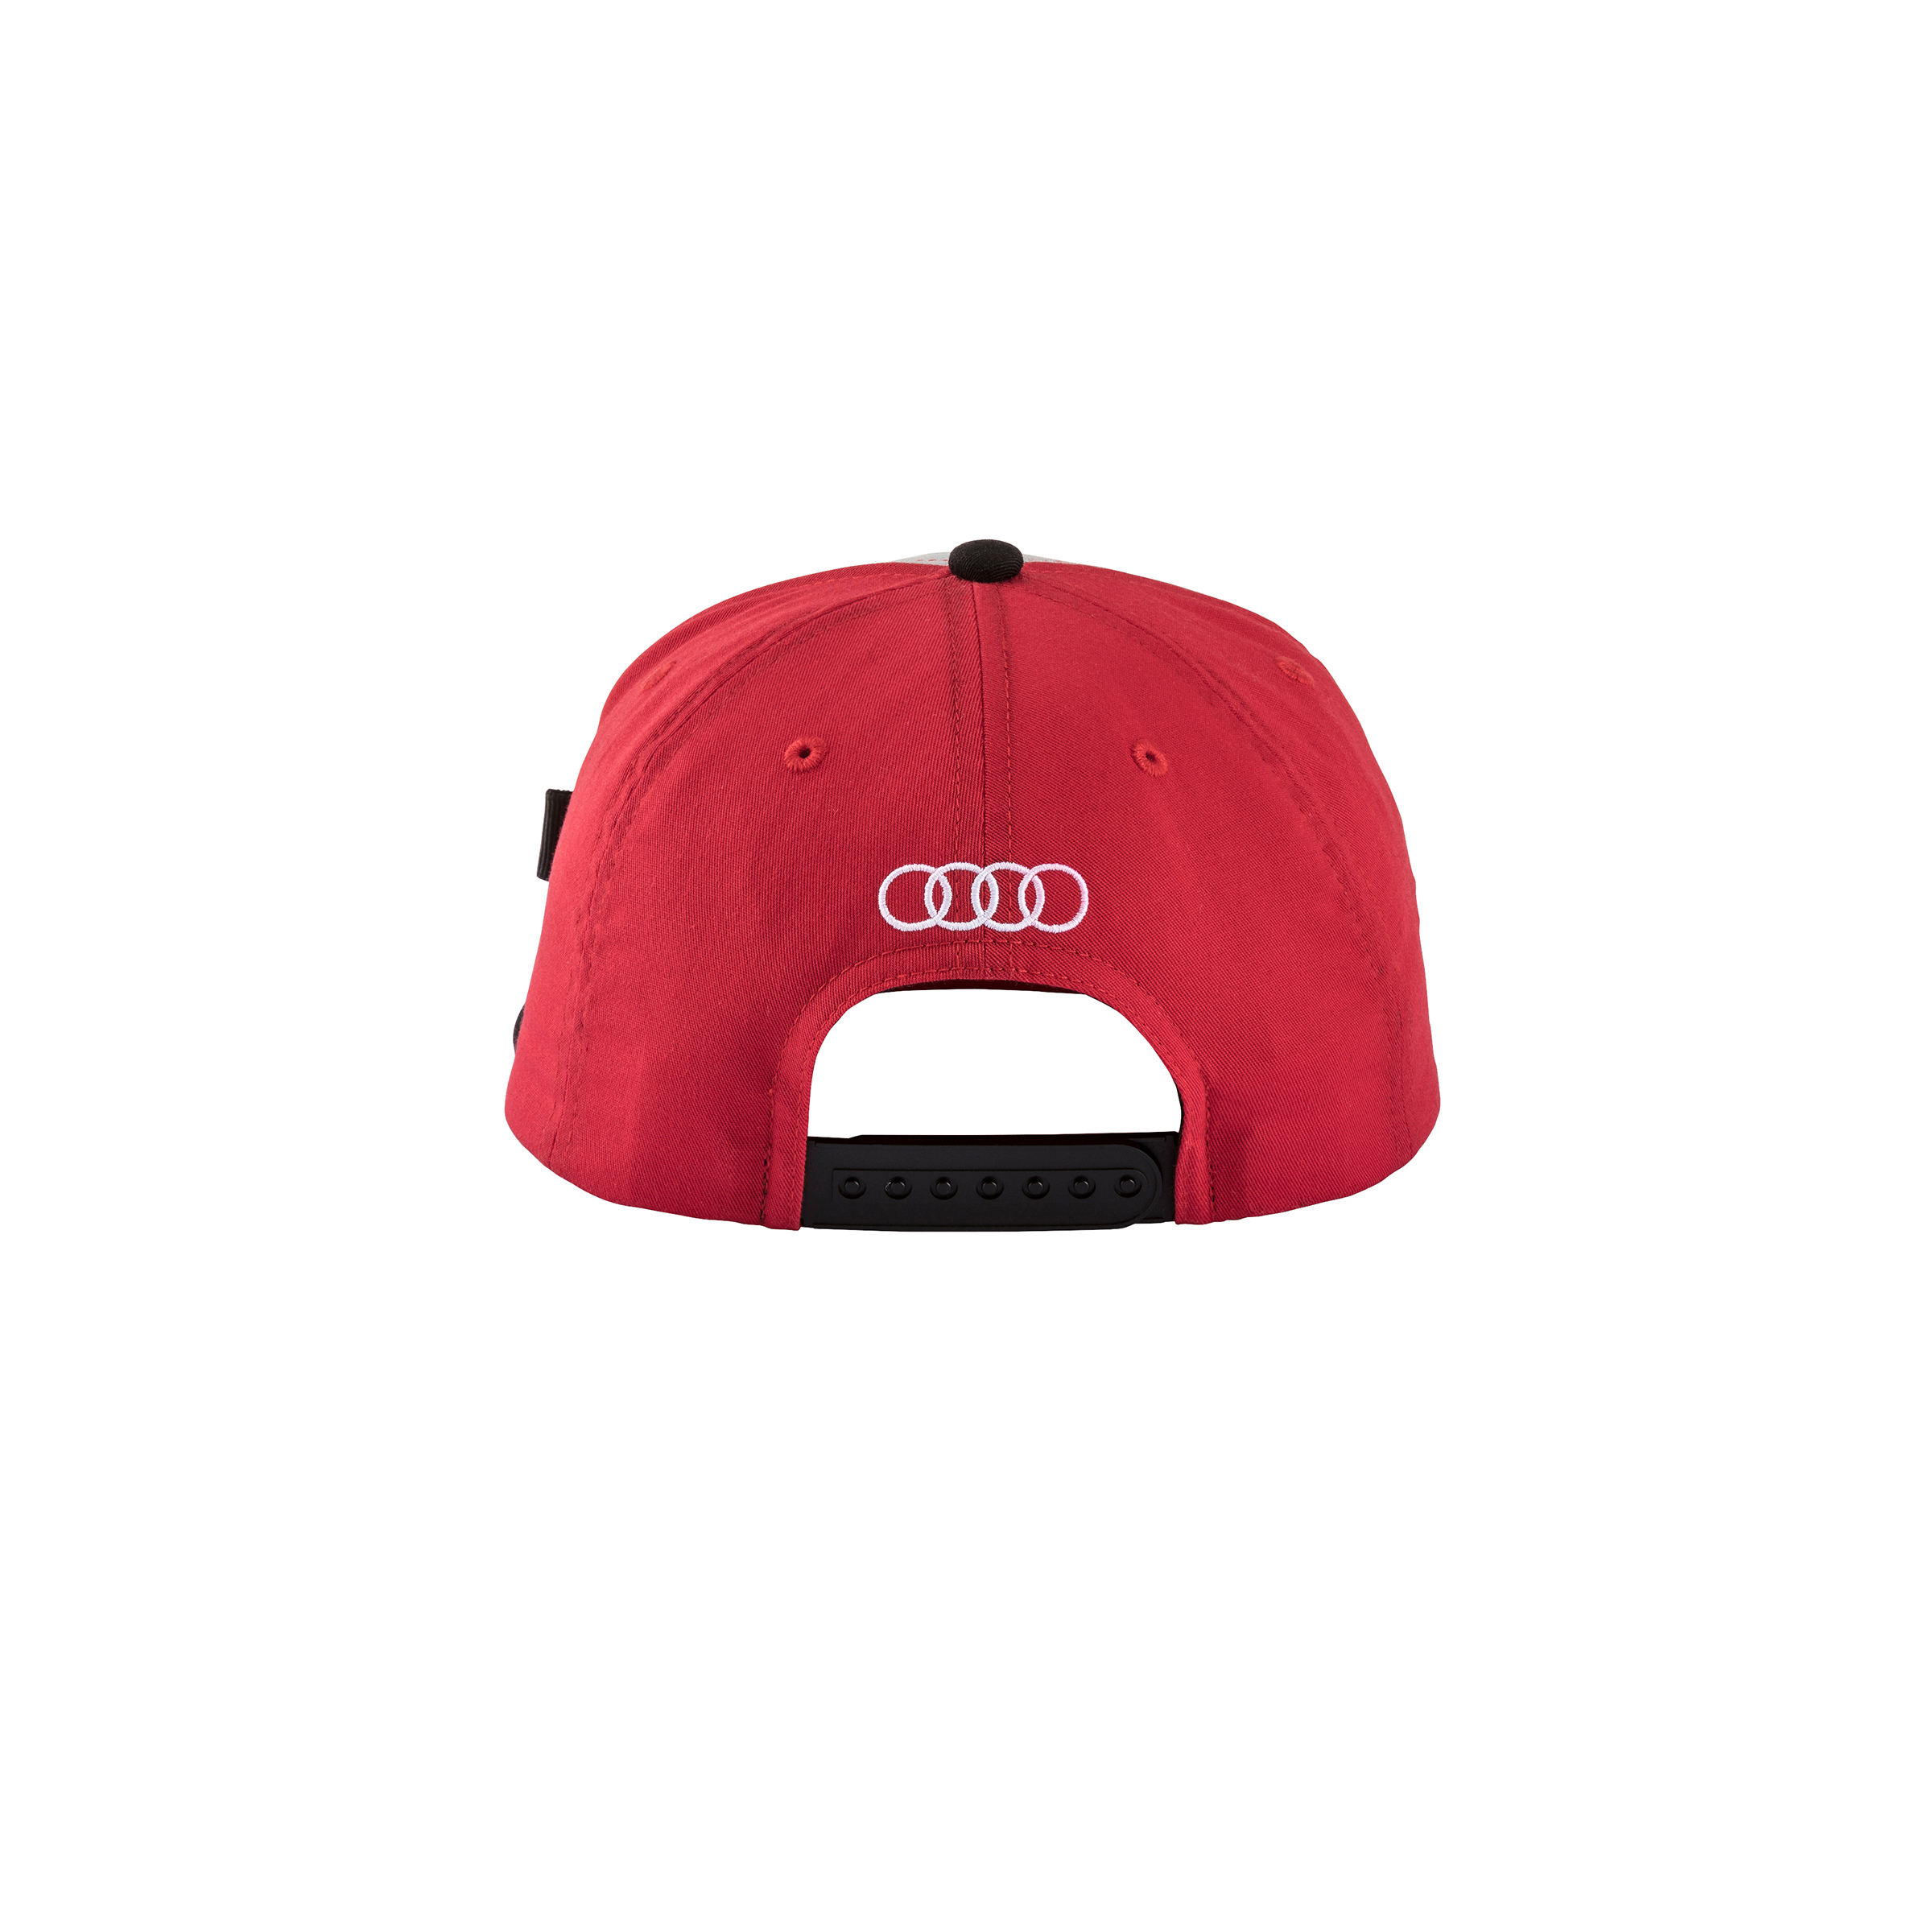 Original Audi Cap ADUI, Kinder, grau/rot Baseballcap Basecap Baseballkappe